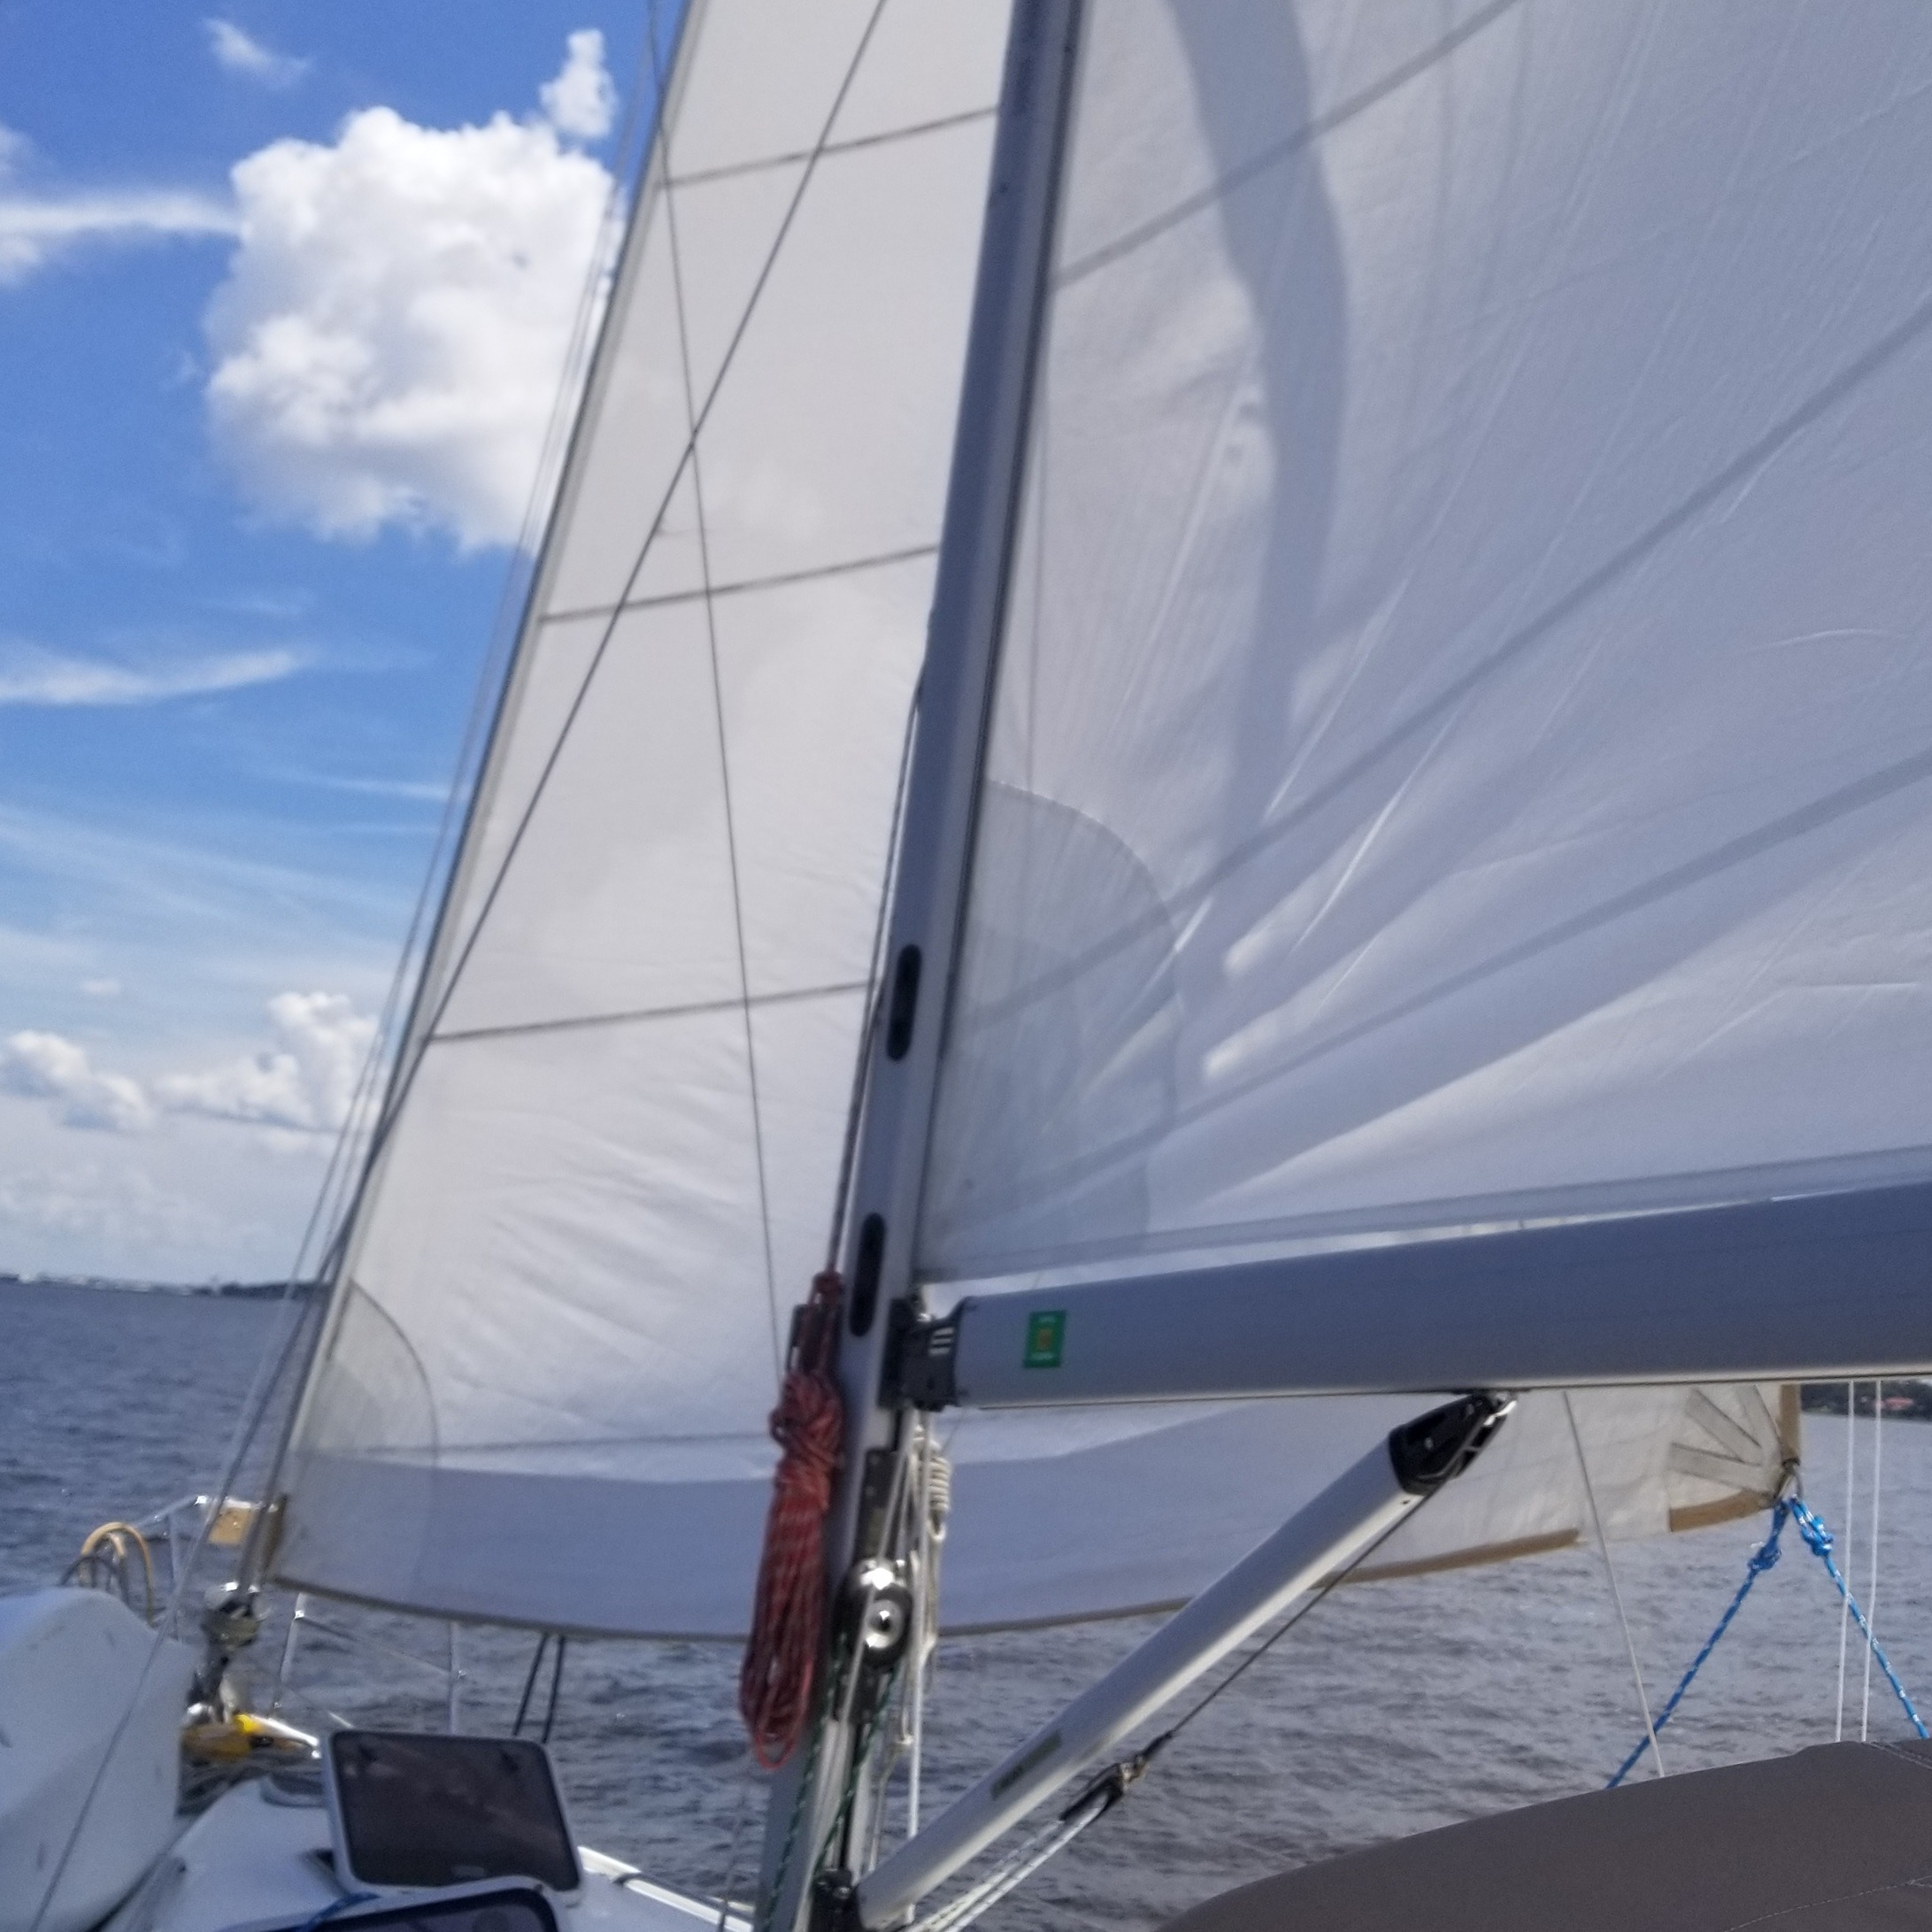 Finally Sailing…